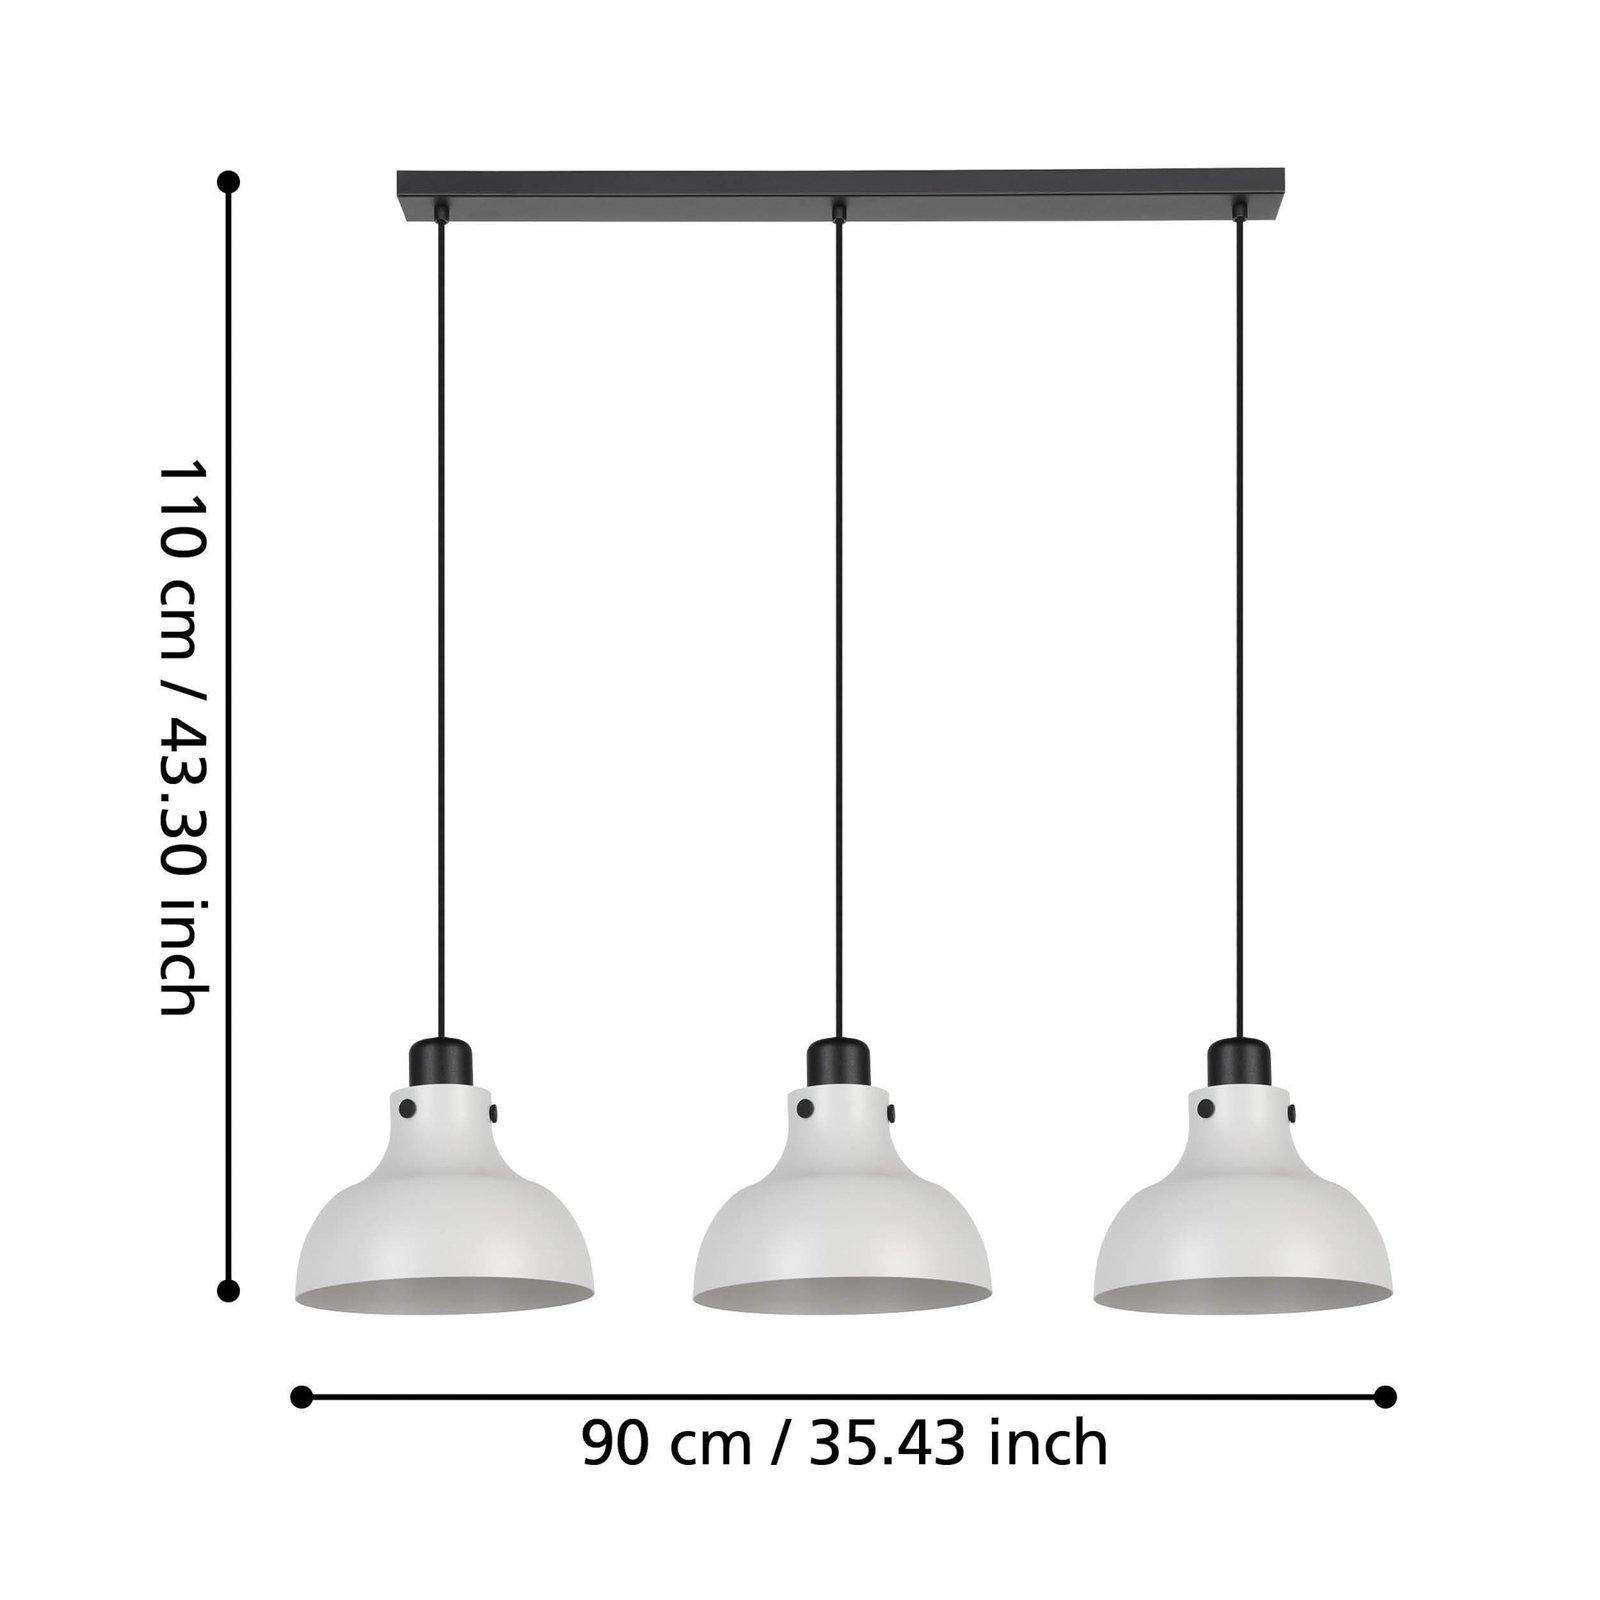 Matlock hanglamp, lengte 90 cm, grijs/zwart, 3-lamps.